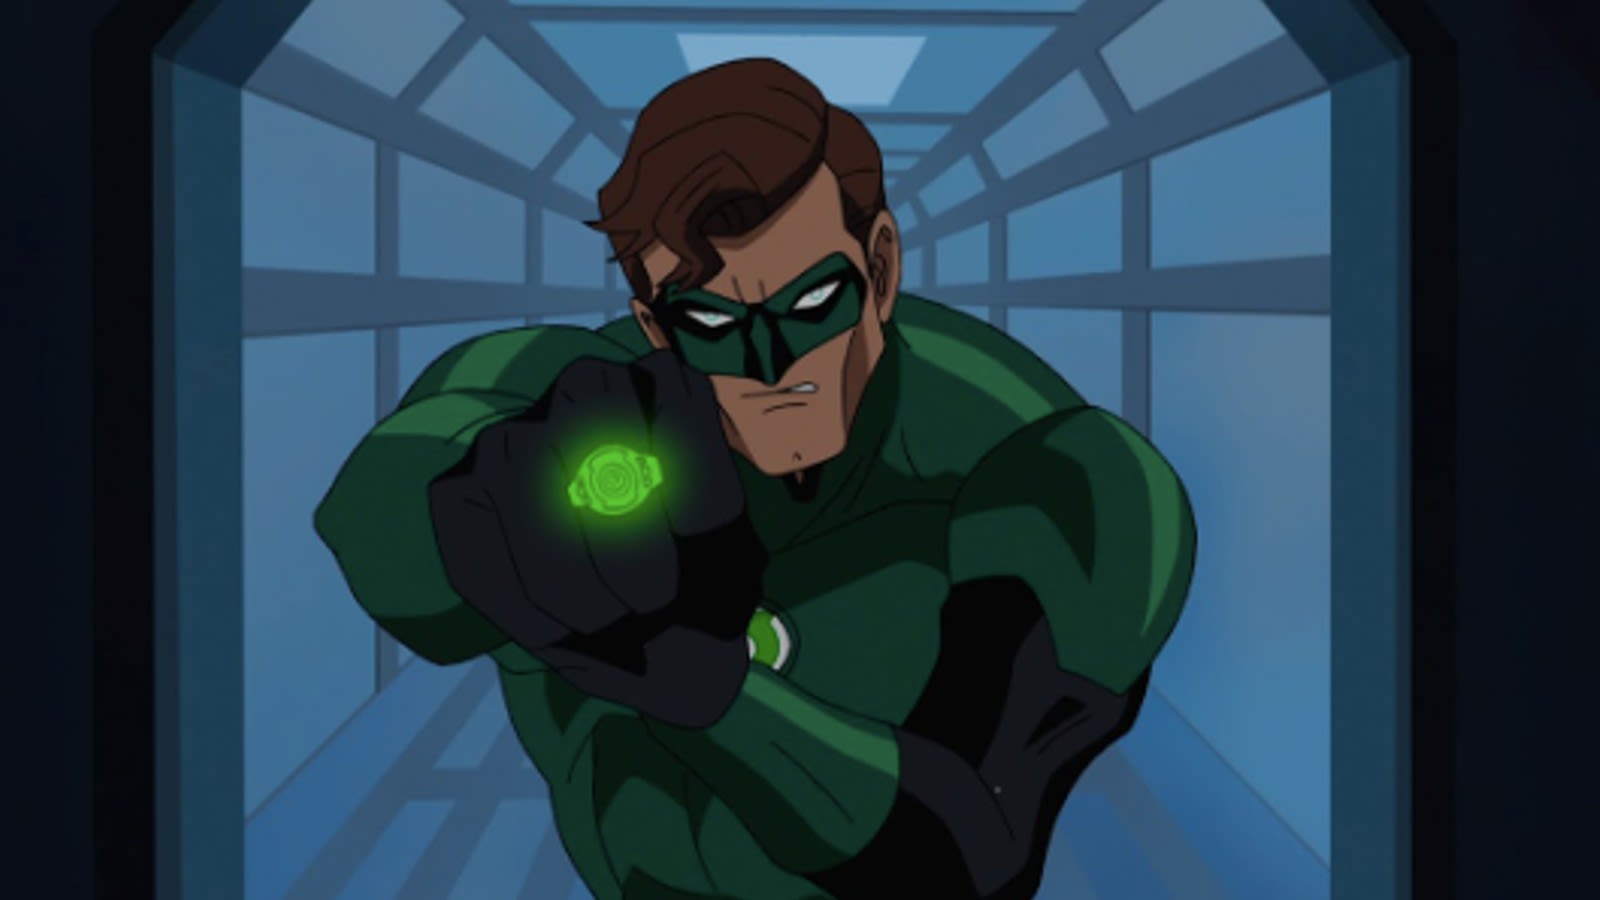 DC’s Lanterns update overshadowed by James Gunn’s resurfaced remarks - Dexerto